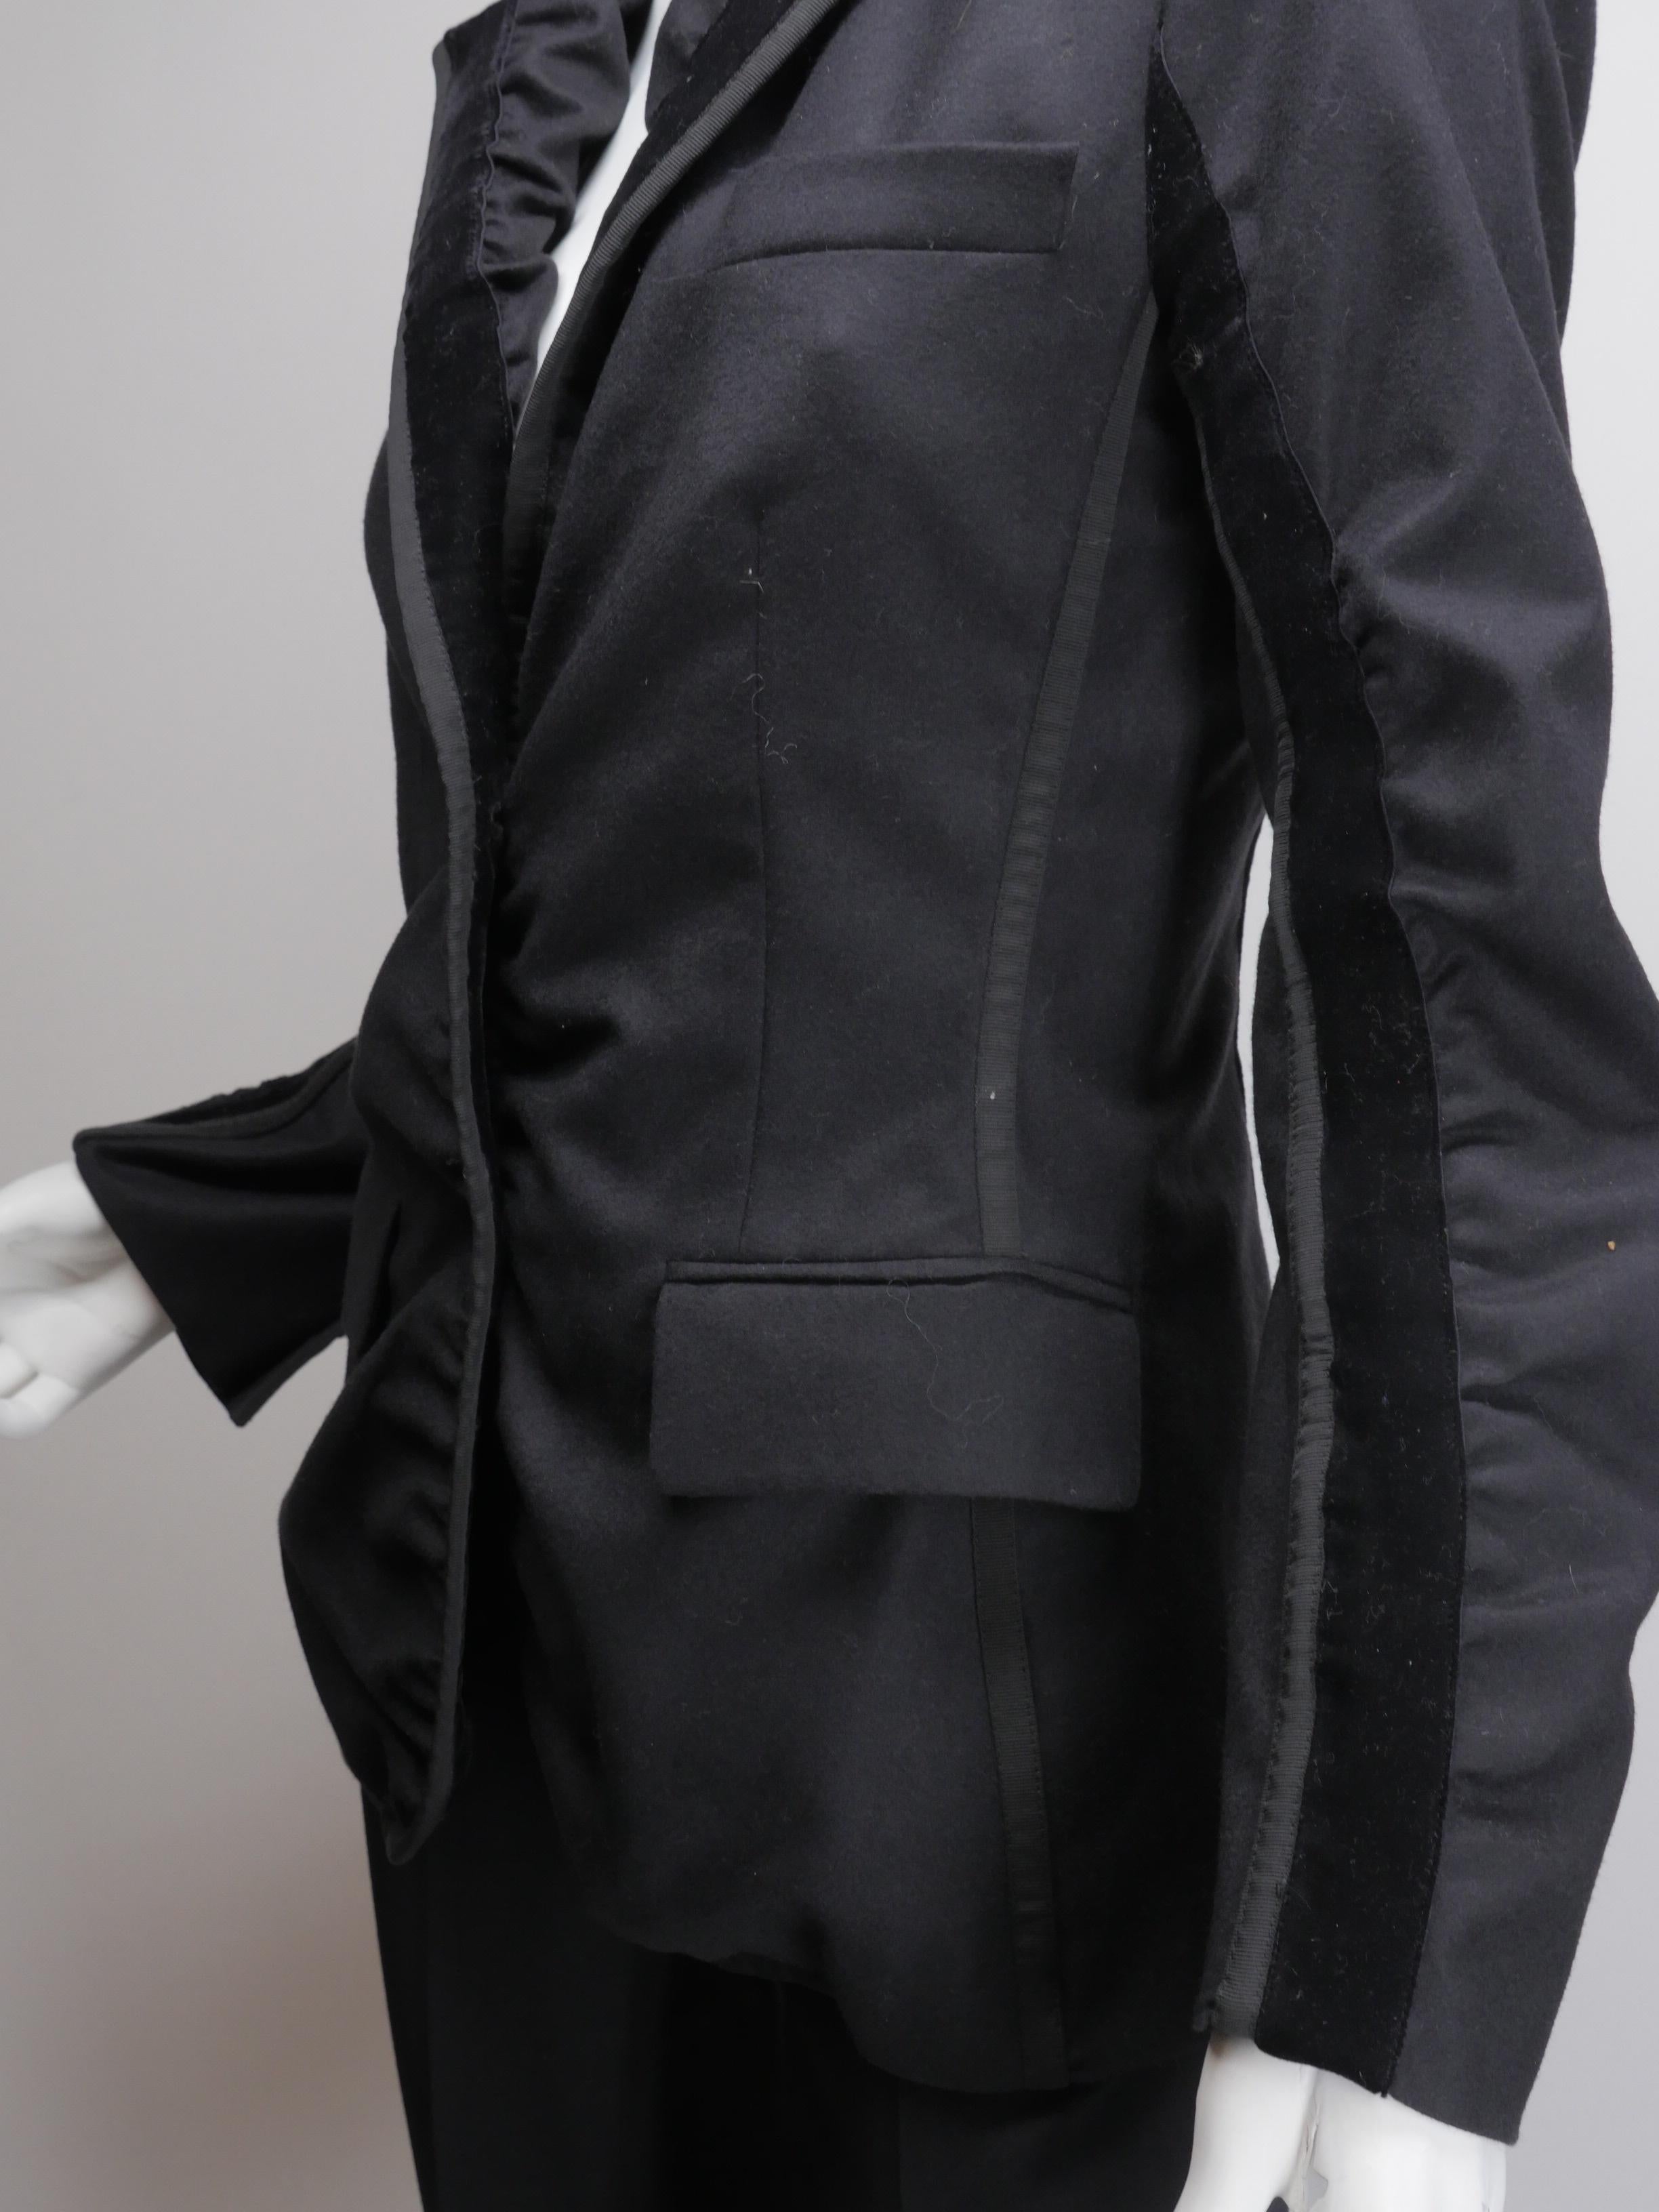 Yves Saint Laurent Black 2 Button Blazer with Shoulder Pads & Velvet Accents.